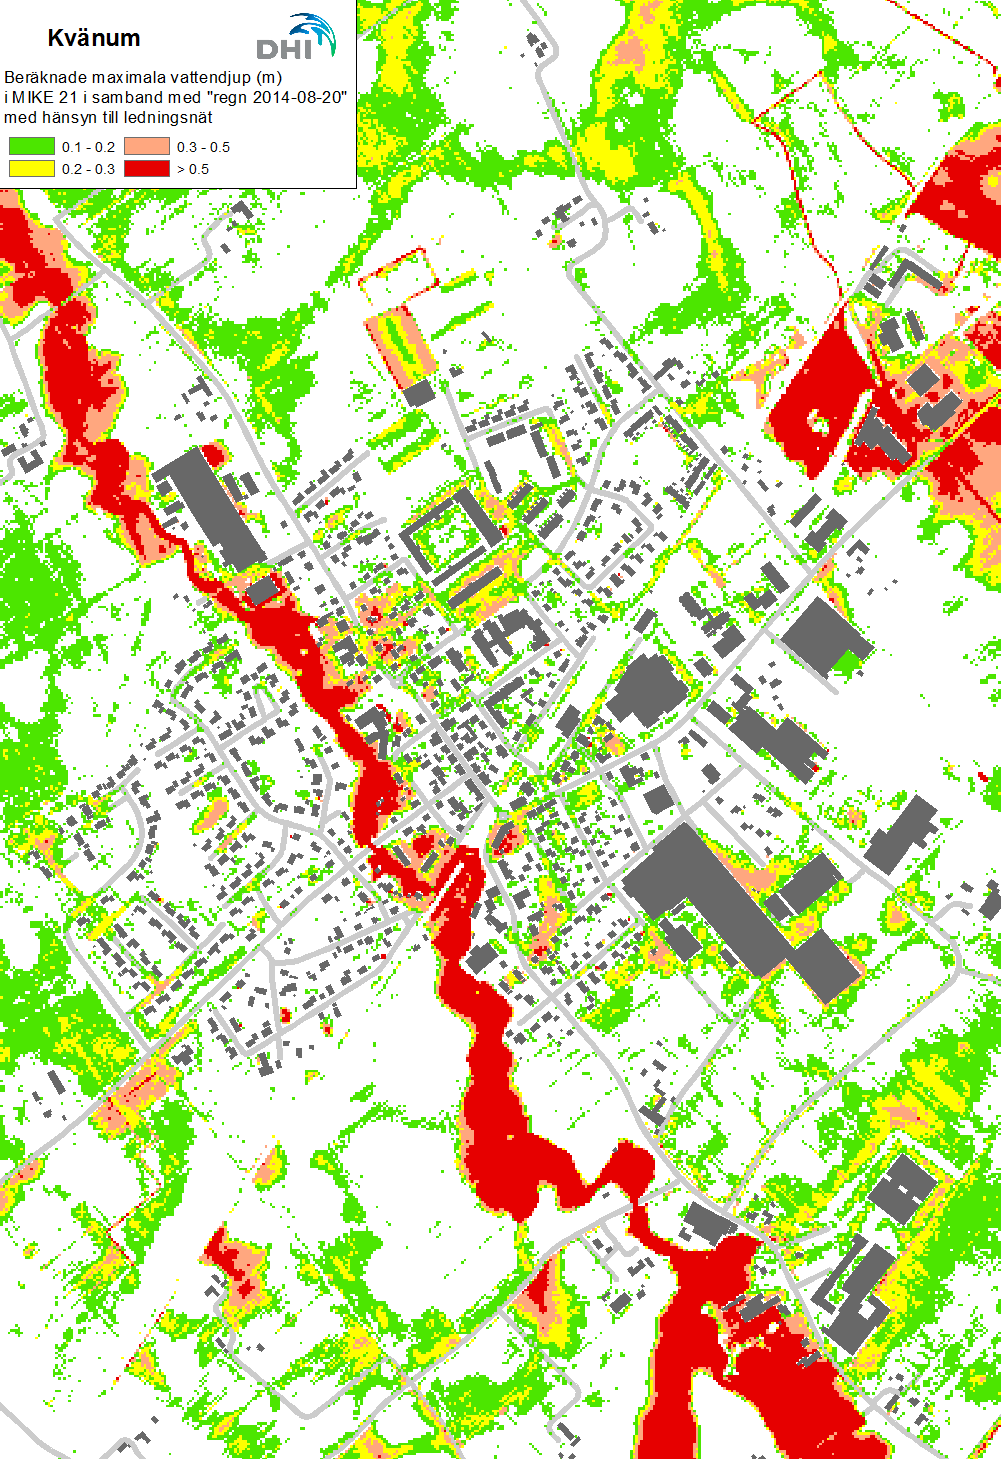 Resultat Figur 3-2 Beräknade maximala översvämningsdjup i Kvänum den 20 augusti 2014 (avser beräkning med hänsyn